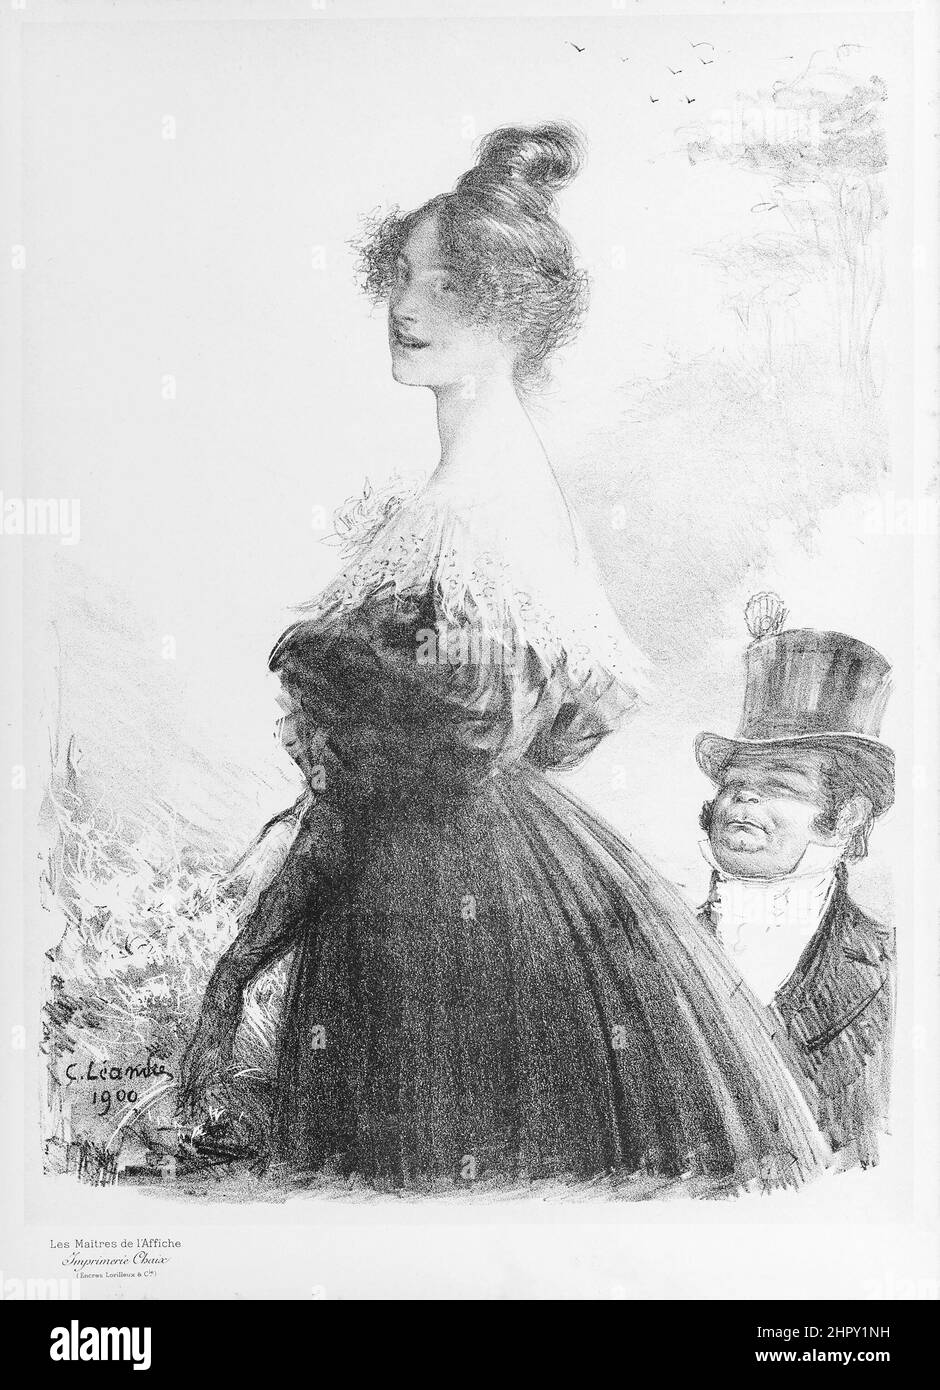 Artiste: Charles Leandre - Maitres de l'affiche, assiette bonus: Mimi Pinson - 1900. Dessin / illustration en noir et blanc. Banque D'Images